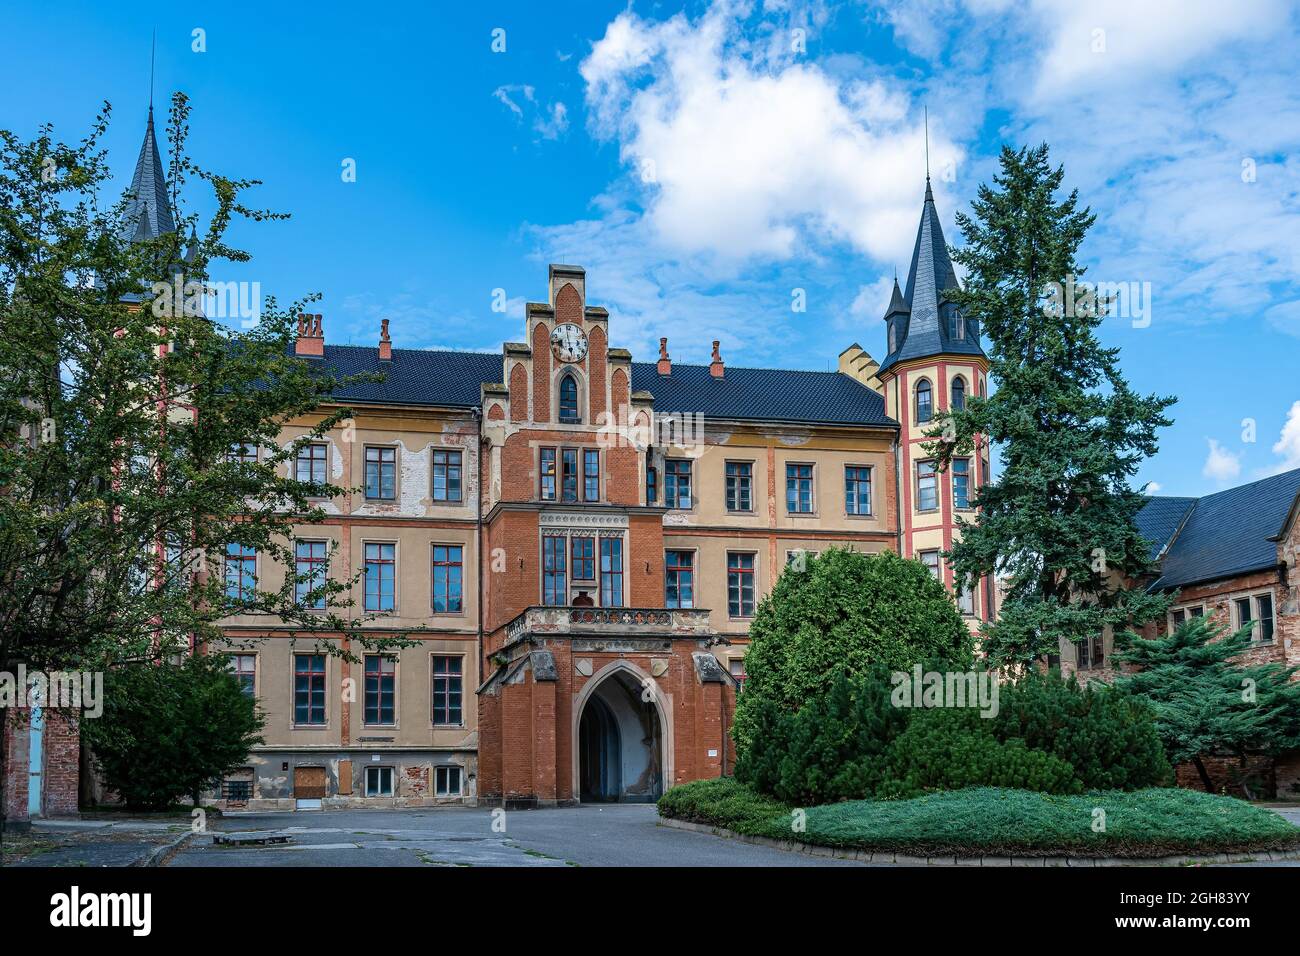 BZENEC, TSCHECHISCHE REPUBLIK - 26. Aug 2021: Eine szenische Aufnahme des Schlosses in der Weinstadt Bzenec, umgeben von einem schönen Garten Stockfoto